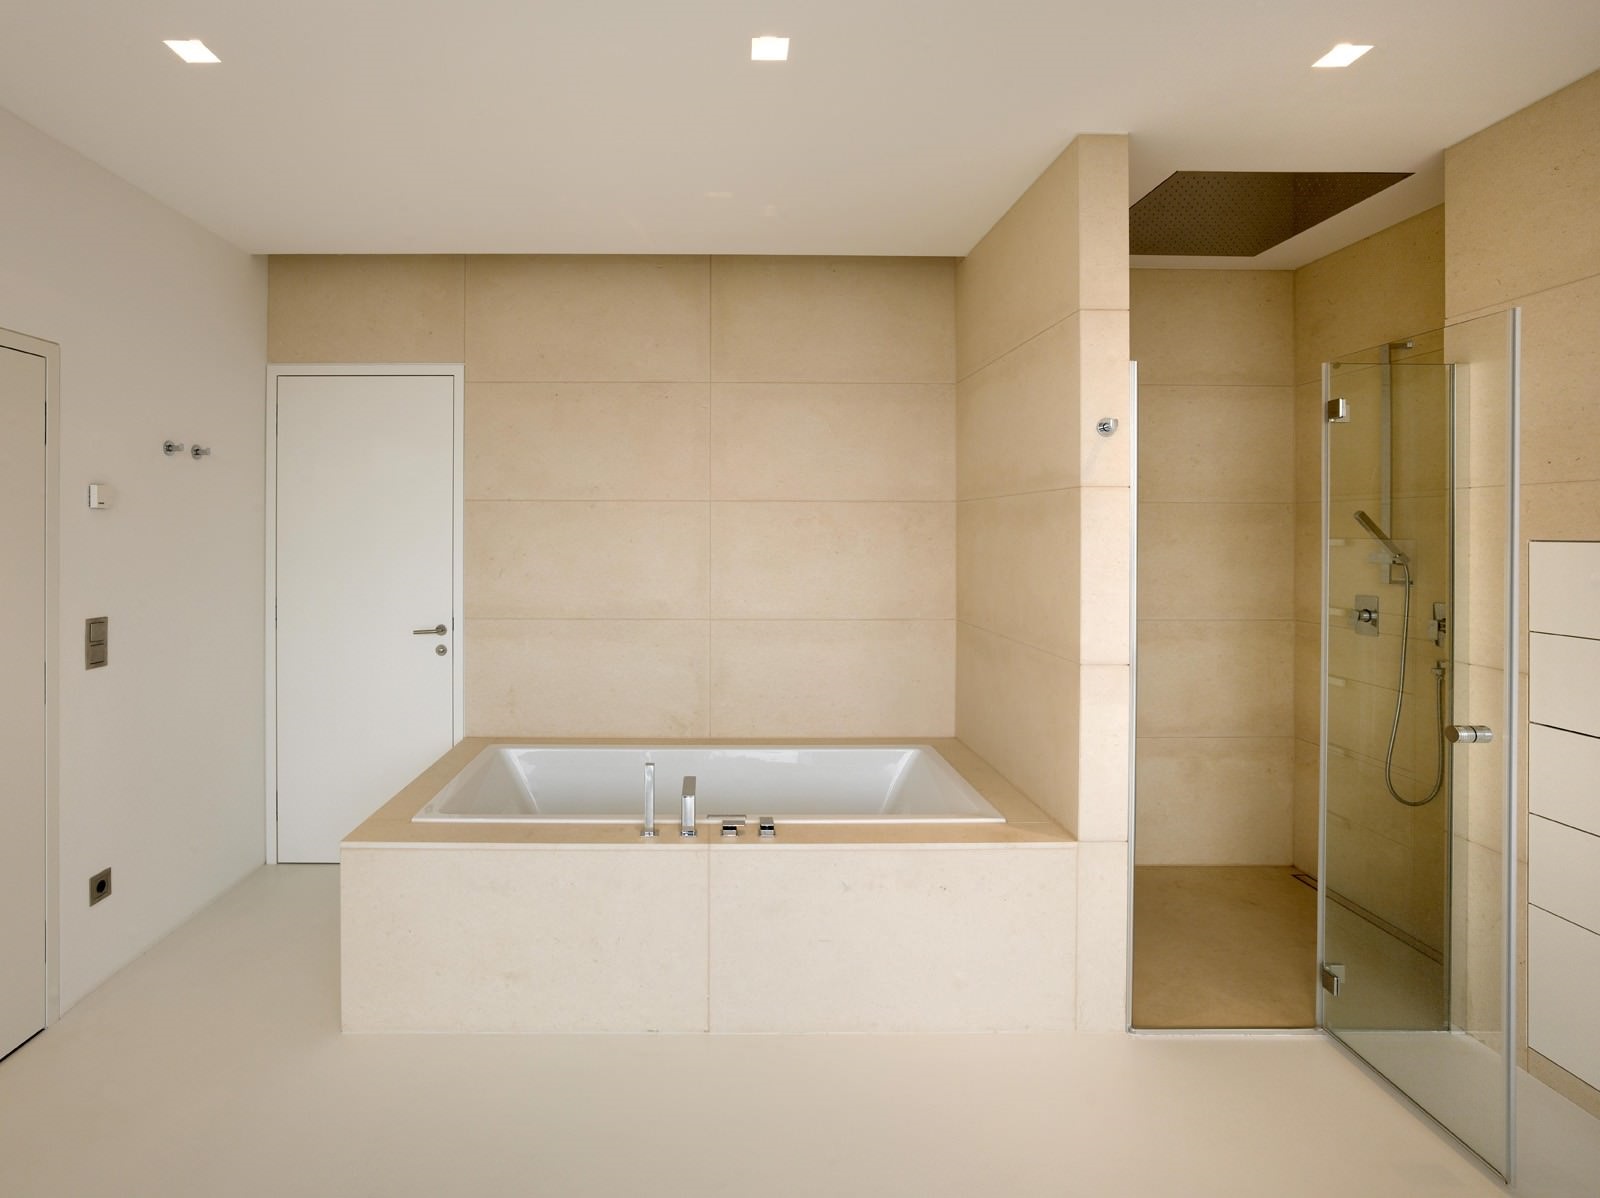 Un esempio di un bellissimo design del bagno in colore beige